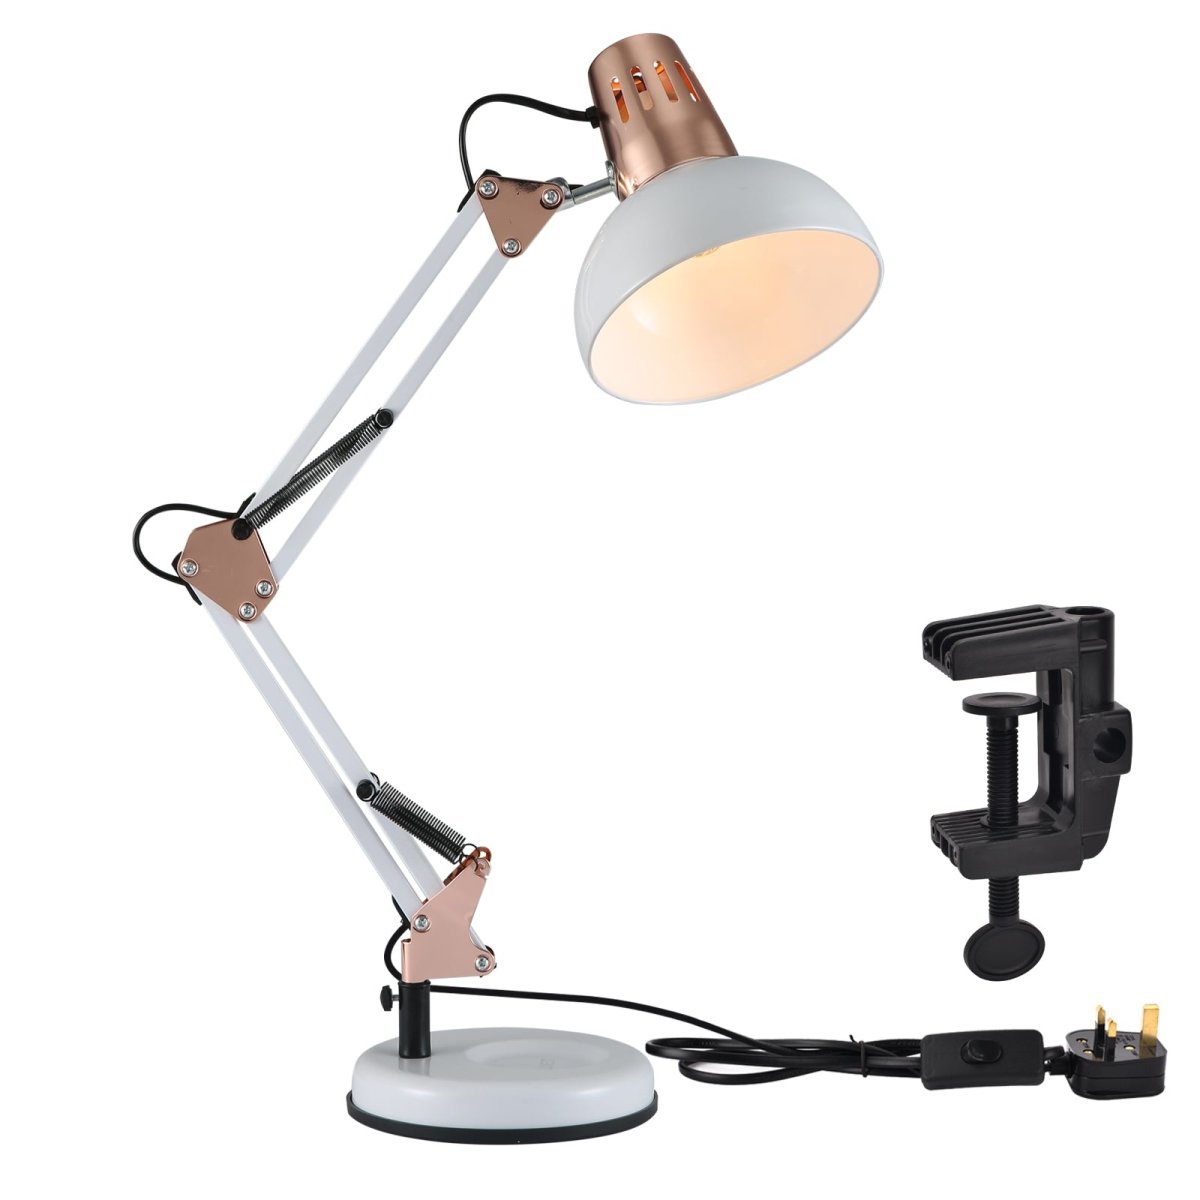 Main image of Atlas Architect Swing Arm White Copper Desk Lamp with Clip E27